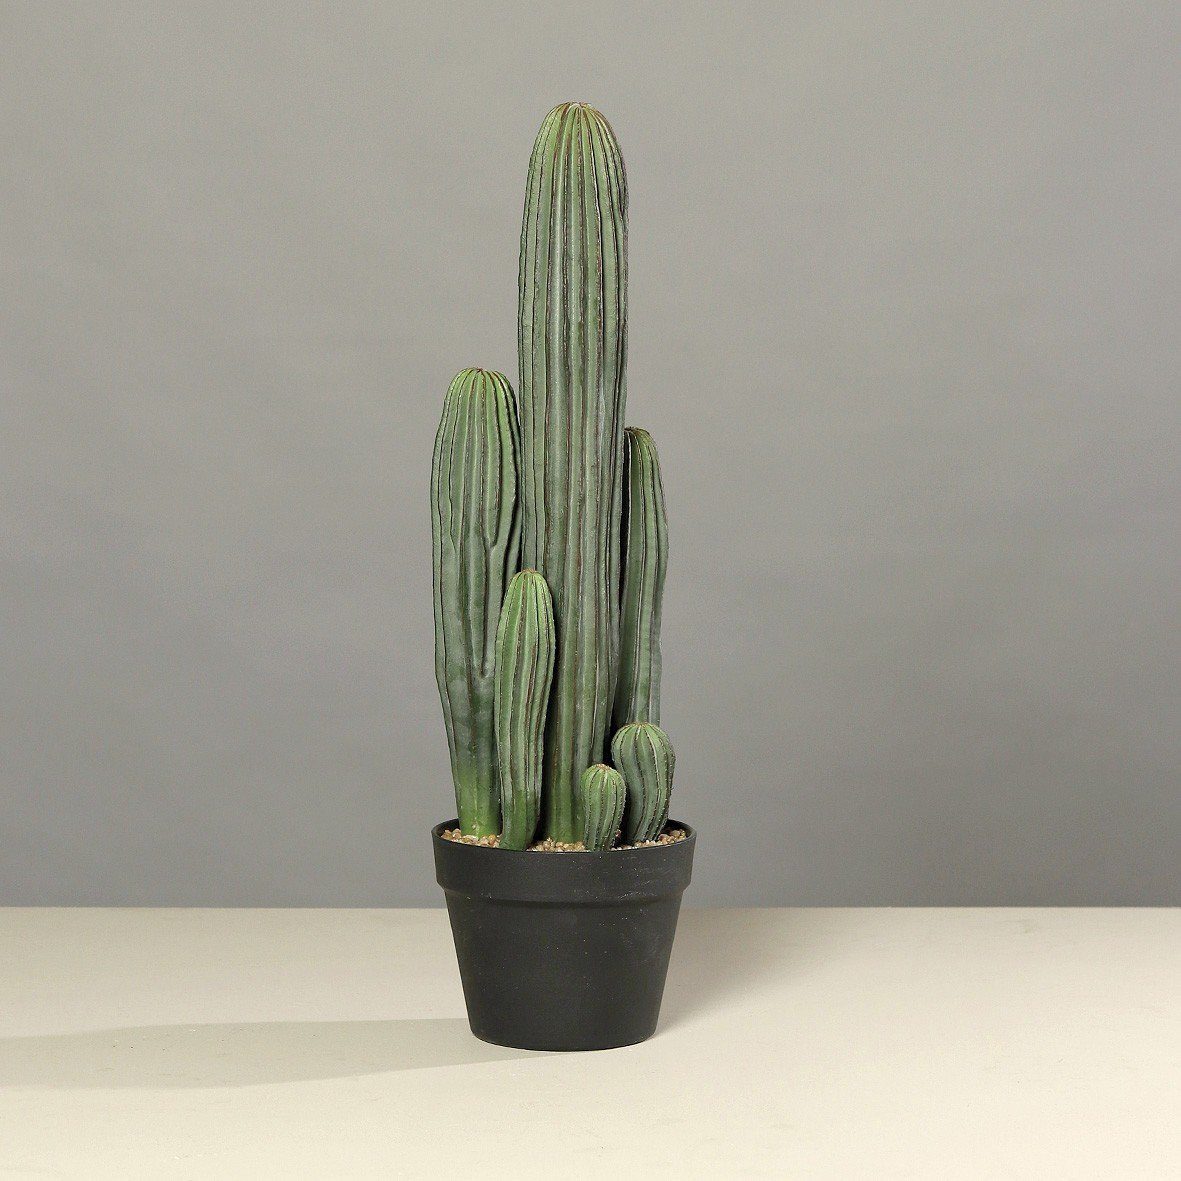 Deko Kaktus breit 13-18cm